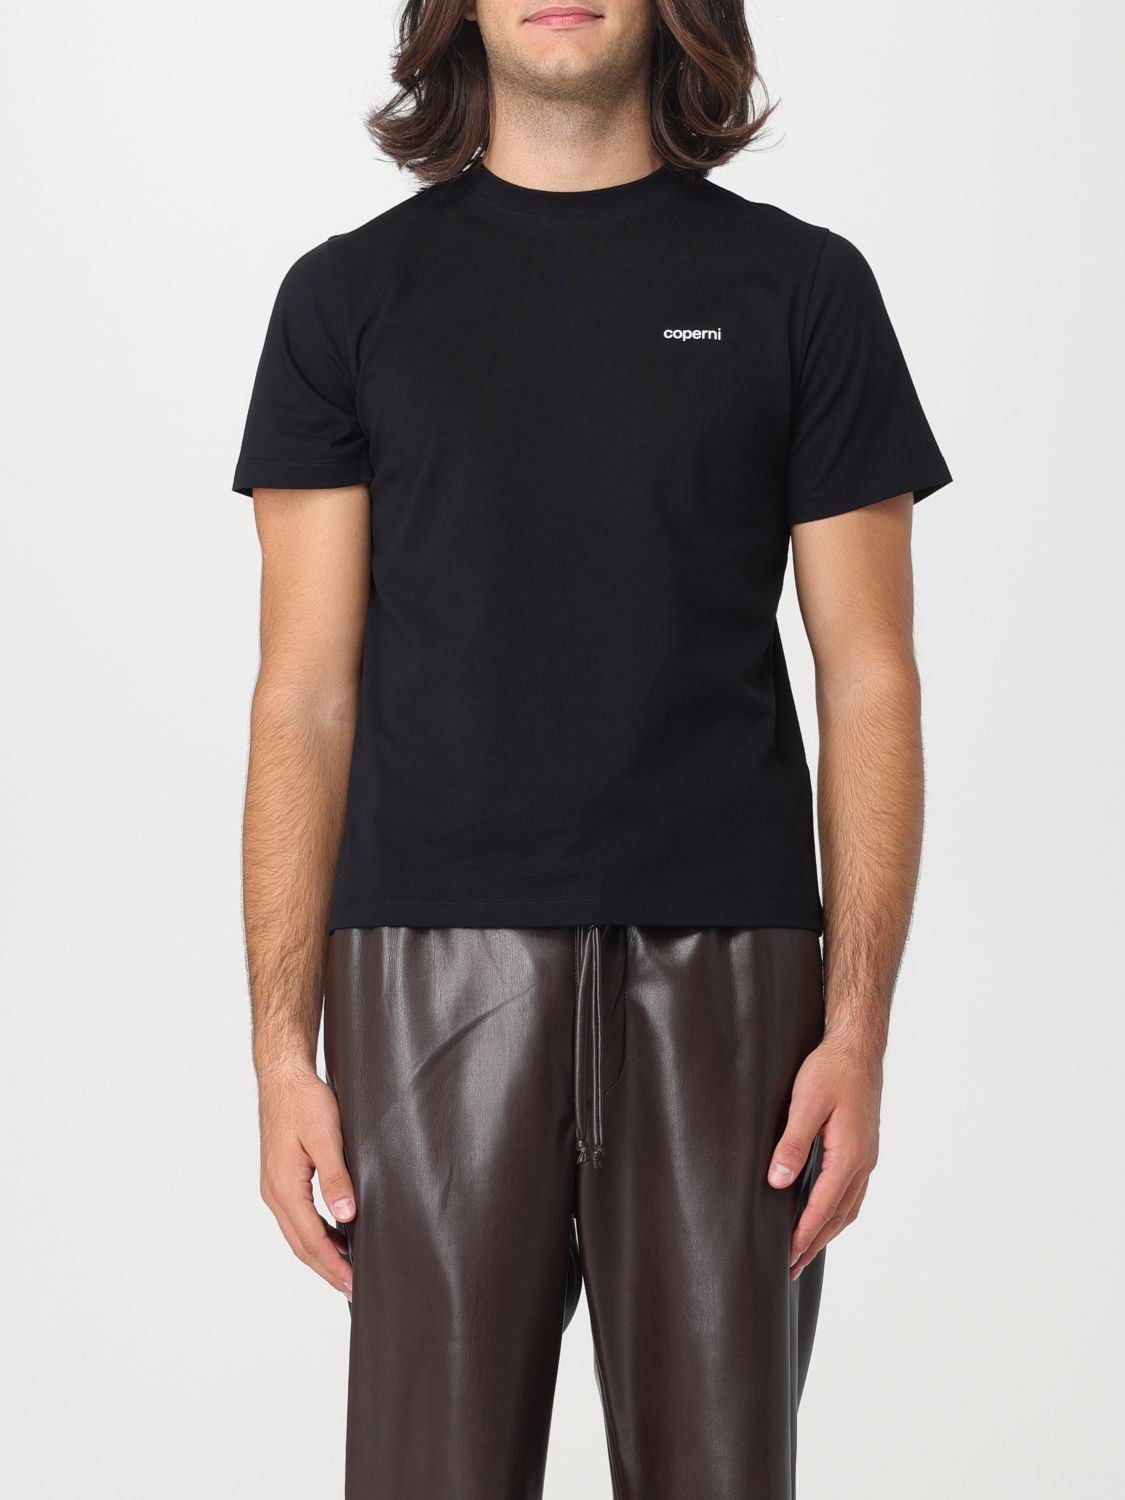 Coperni T-Shirt COPERNI Men colour Black